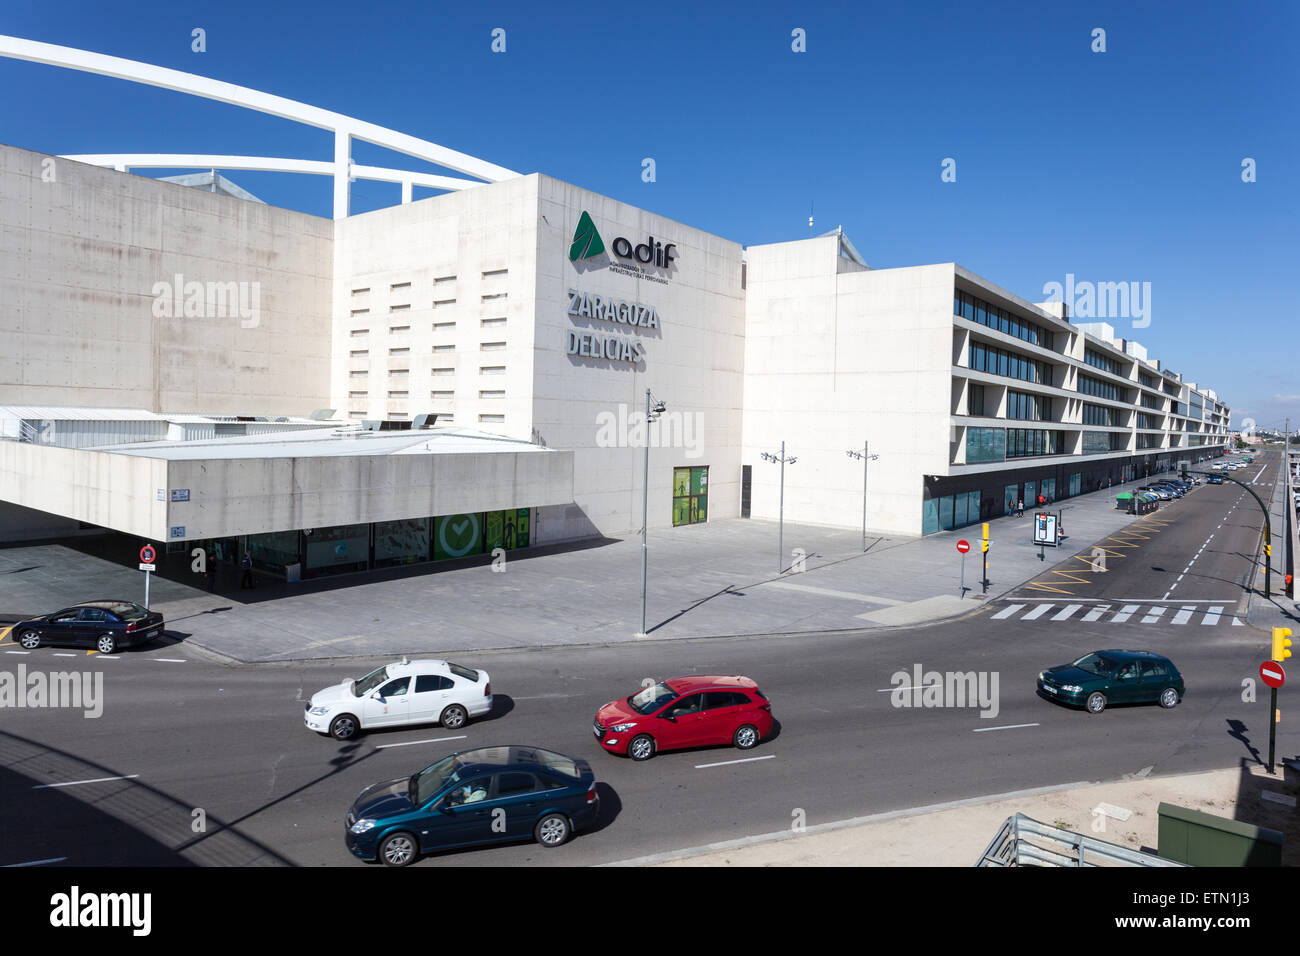 Der neue moderne Bahnhof Zaragoza Delicias außen. Provinz Aragon, Spanien Stockfoto